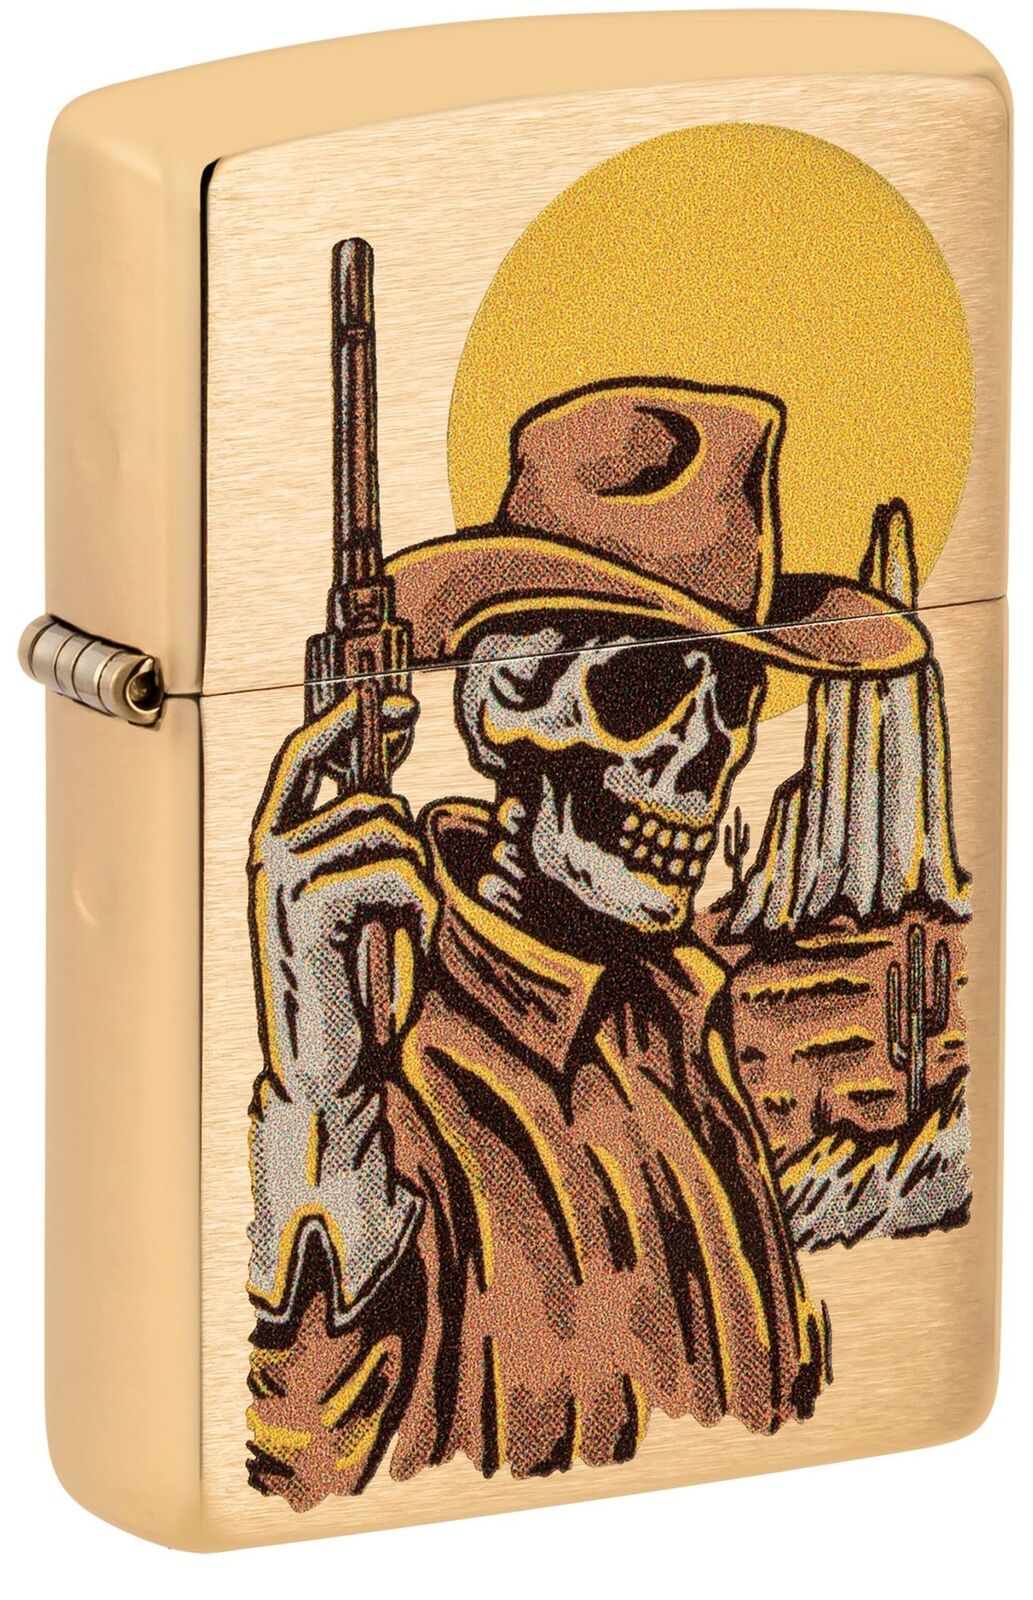 Zippo Wild West Skeleton Design Brushed Brass Pocket Lighter 48519-103714